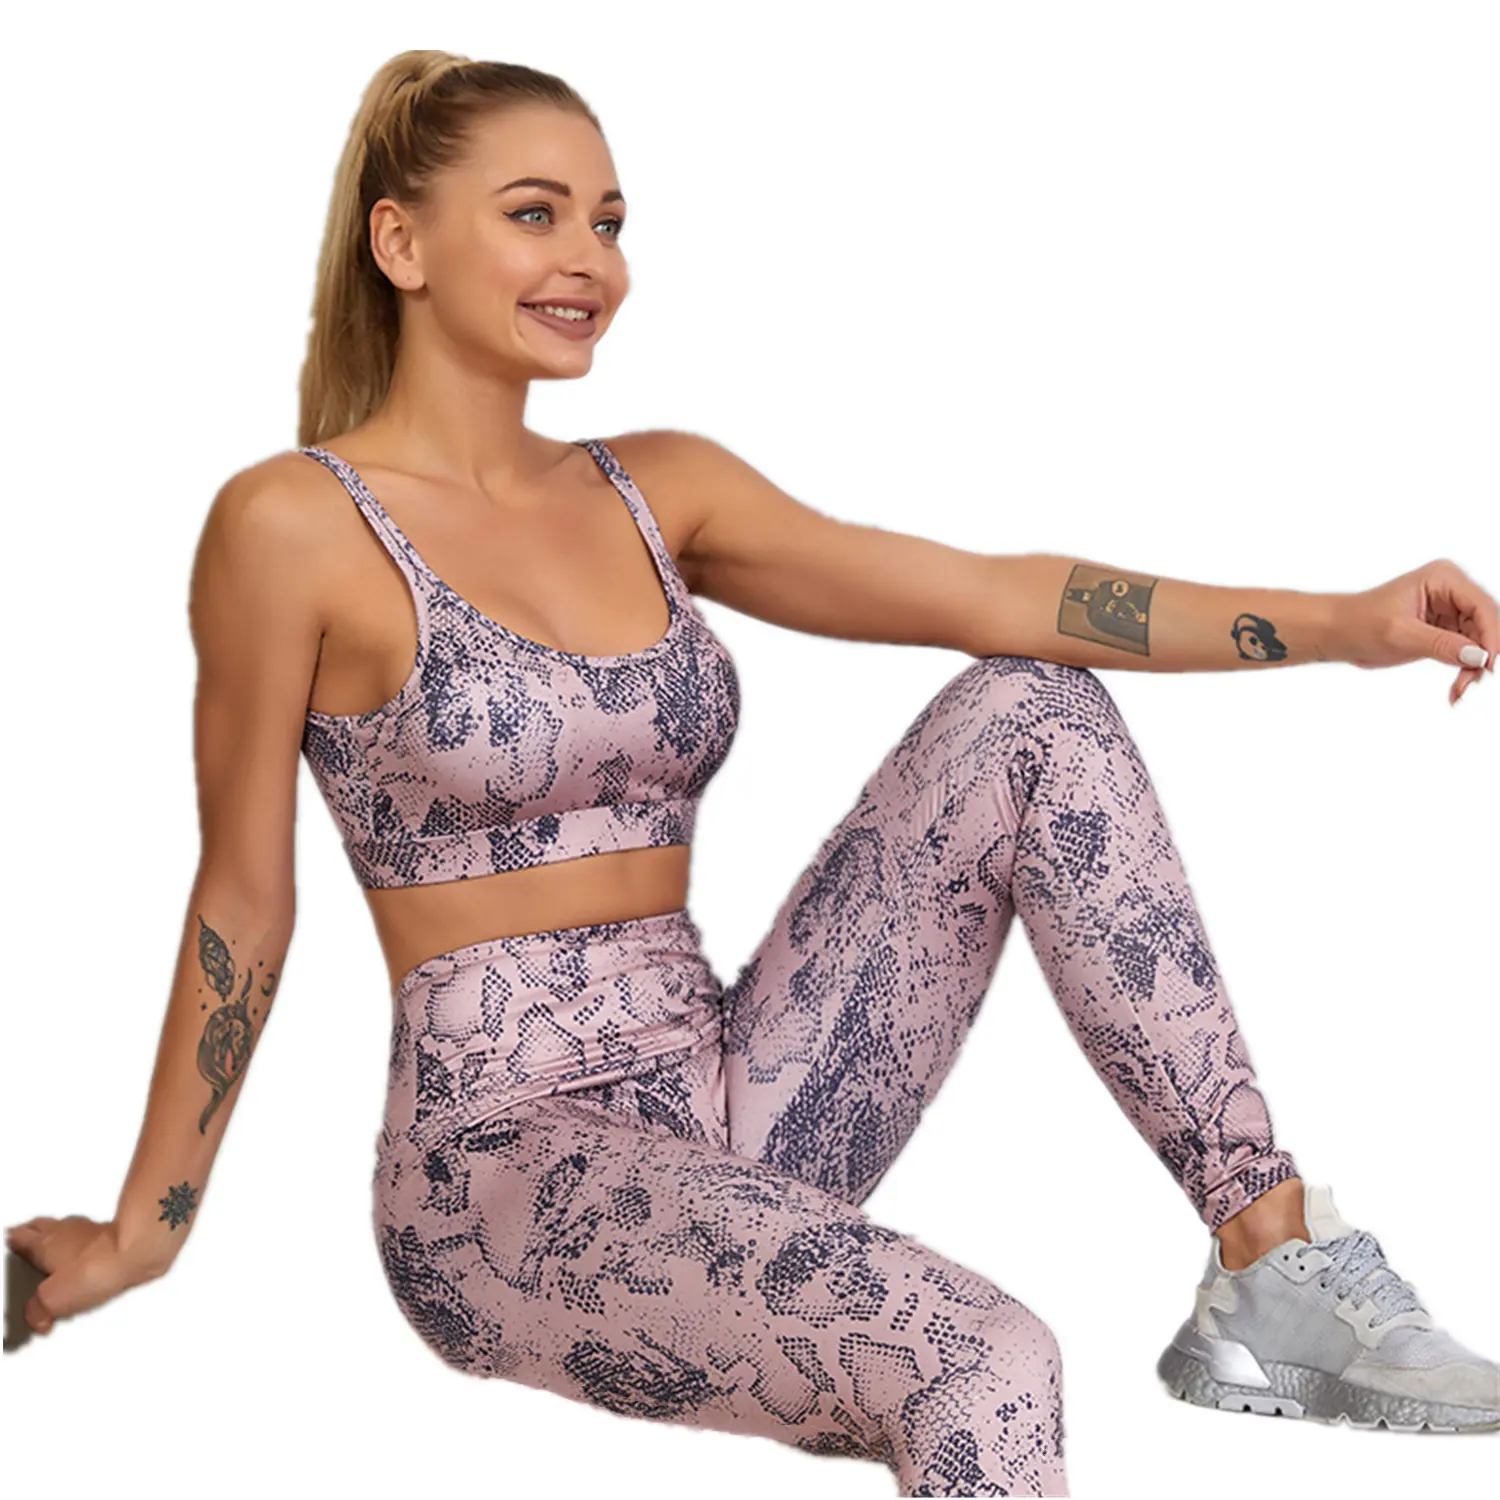 Personalizzato di Stampa Digitale di Alta Elastico pantaloni di Yoga Delle Donne del Vestito di Pelle di Serpente di Modo Del Reggiseno Top Tummy Controllo Sportswear